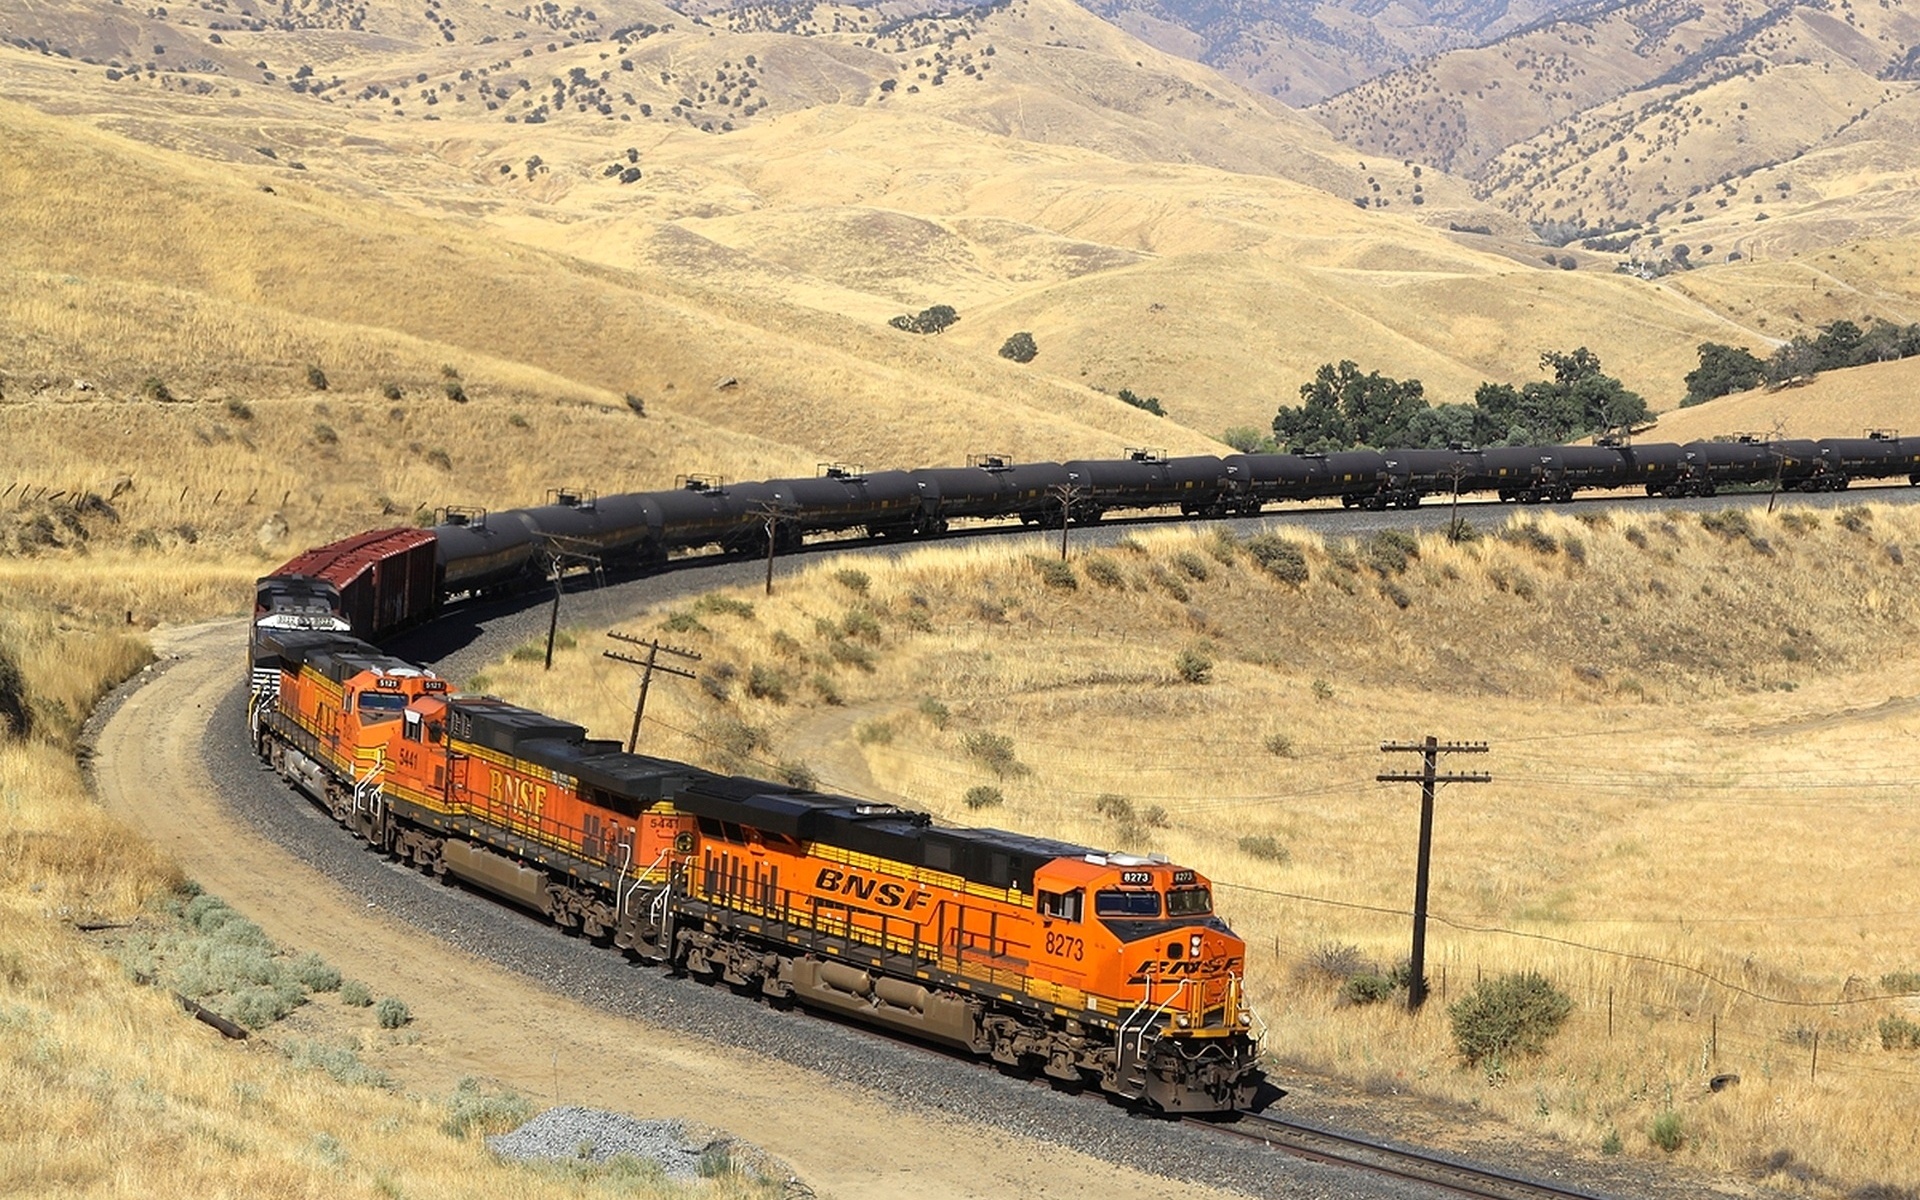 Большой поезд большую дорогу. Железная дорога Burlington Northern Santa Fe (BNSF). БНСФ Рэйлвей. BNSF вагон. Тепловозы BNSF.